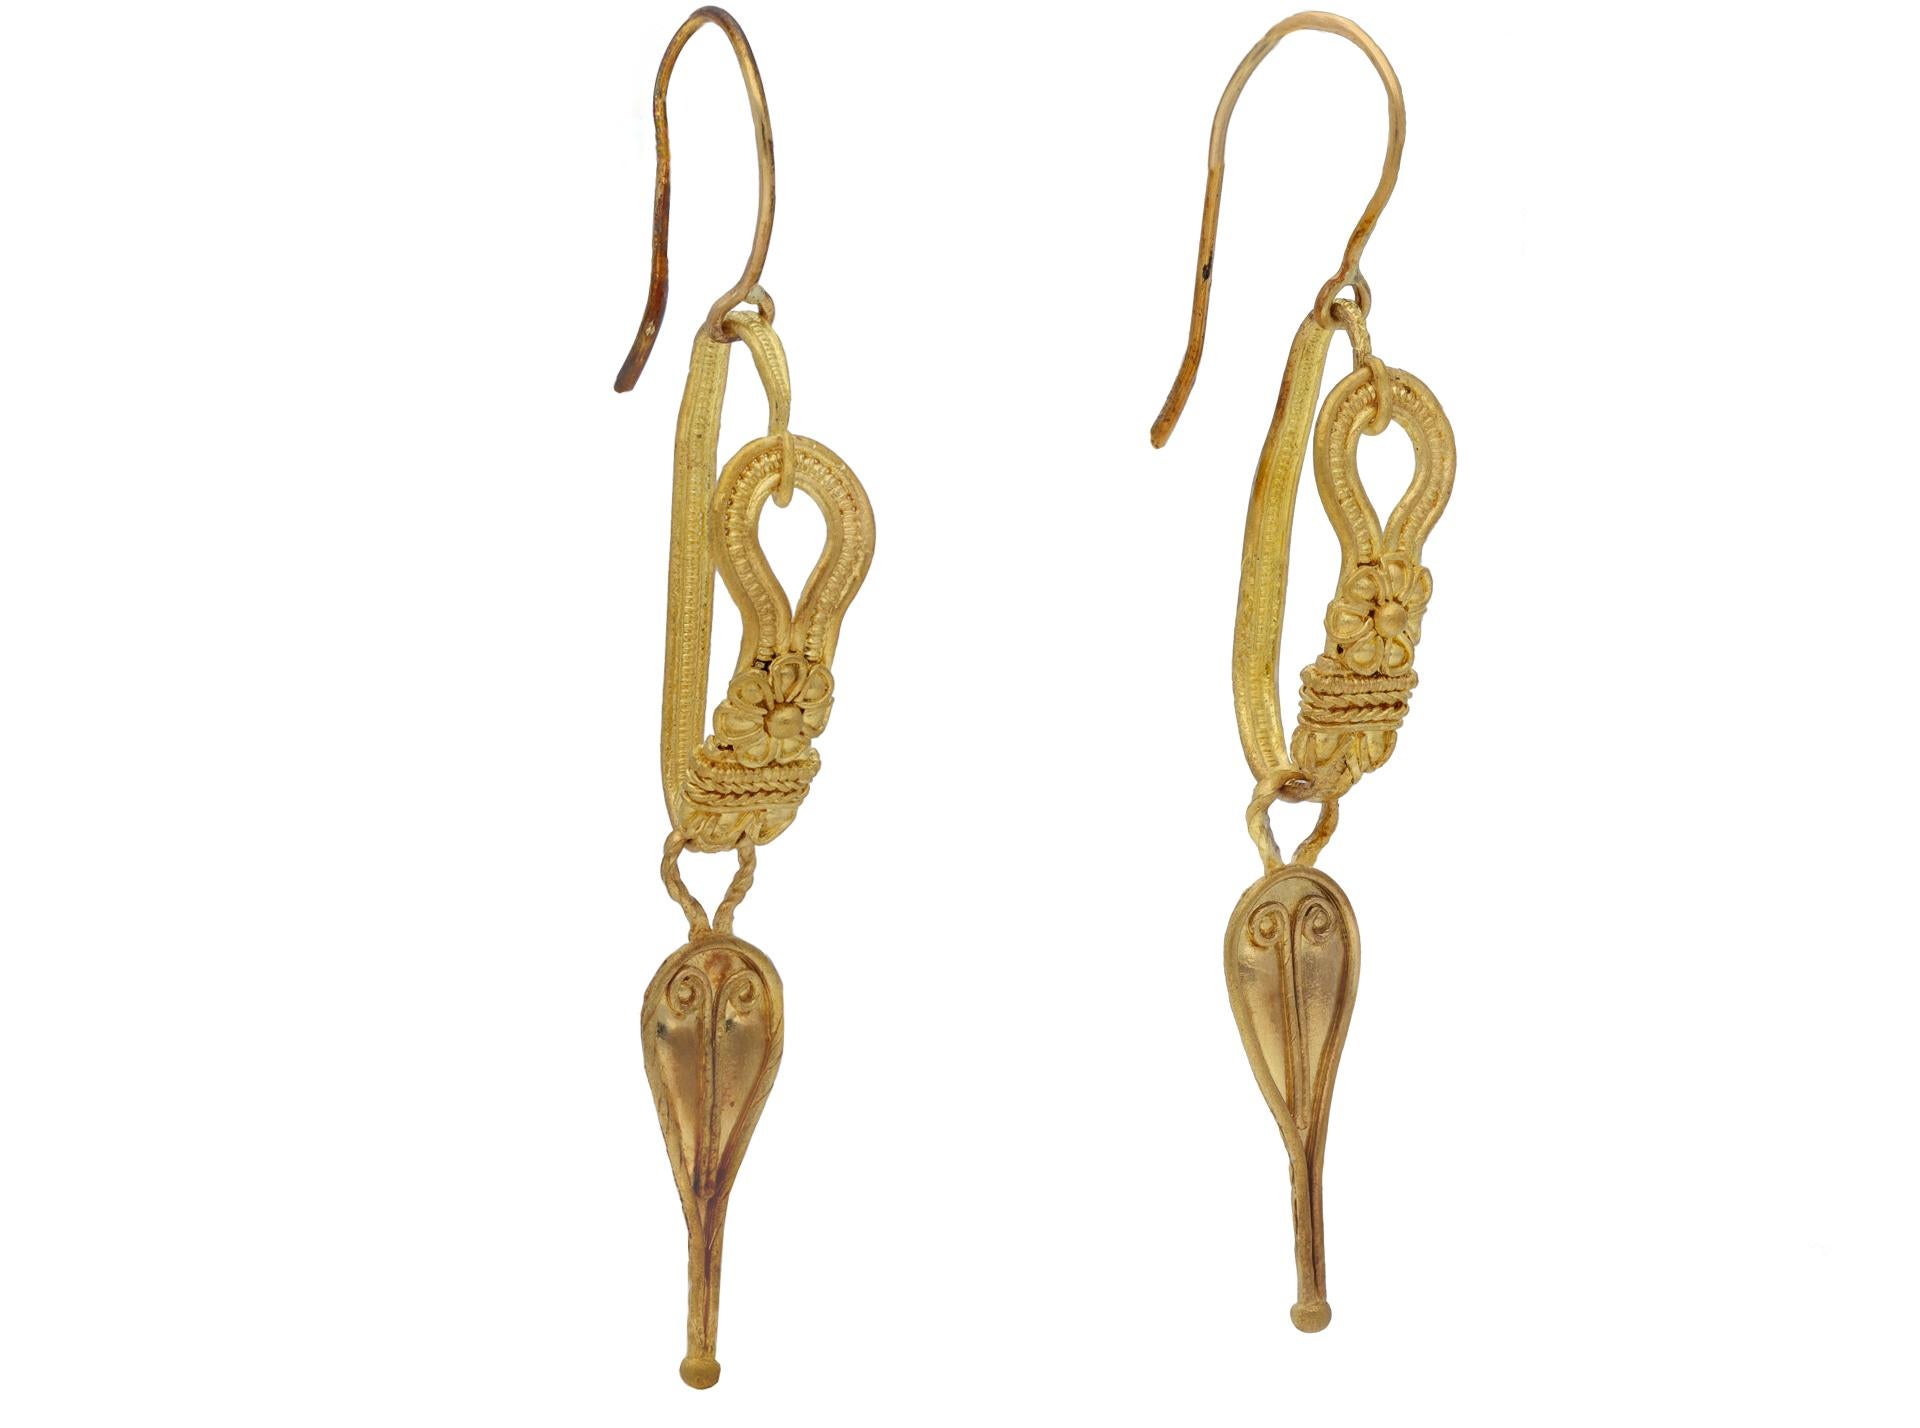 Boucles d'oreilles romaines antiques, 2e siècle après J.-C. Une paire de boucles d'oreilles en or jaune, chacune avec un ornement en forme de goutte inversée décoré d'une perle en or et d'ornements et de bordures en fil d'or, chacune sur une boucle